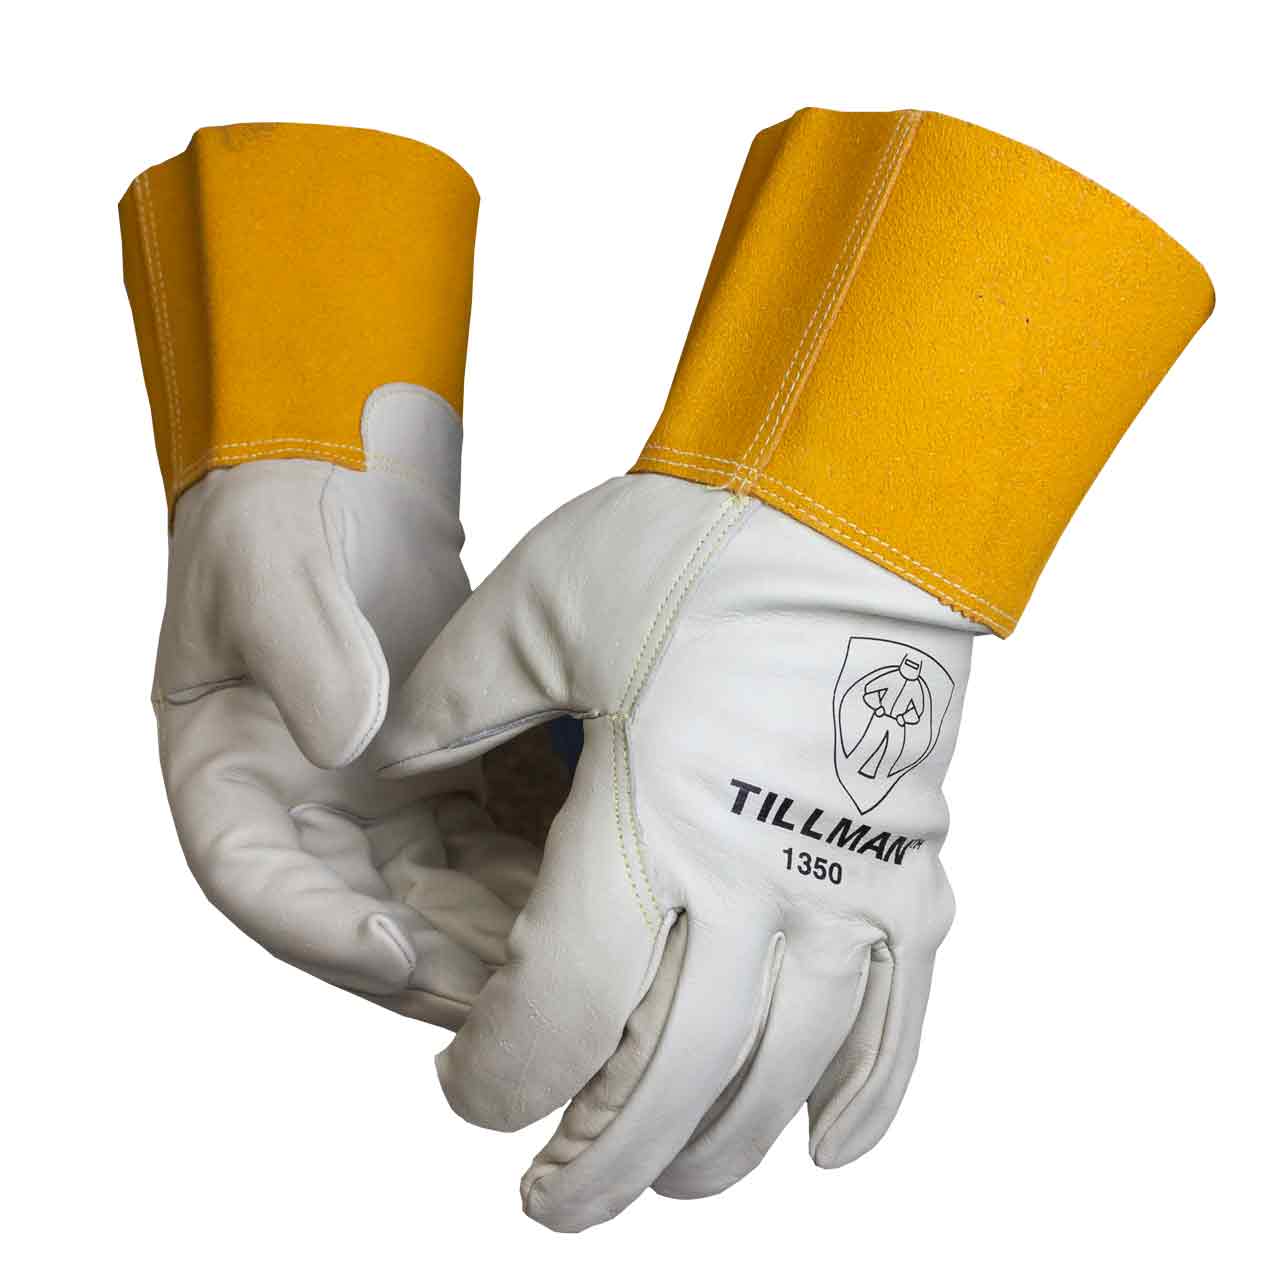 Tillman 1350 Gloves